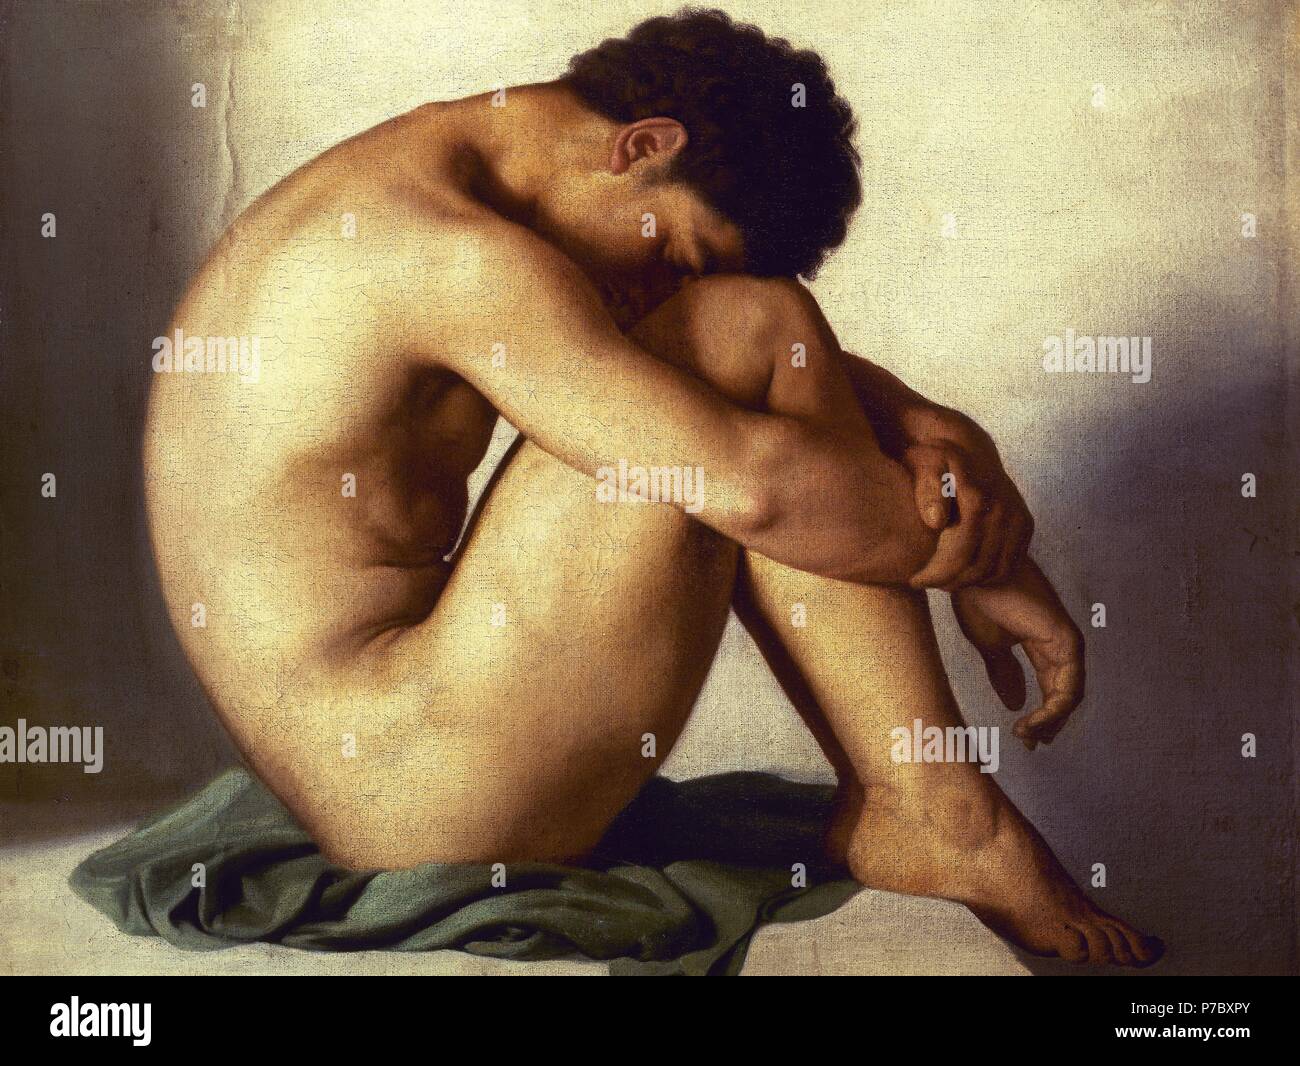 Estudio de un joven desnudo. Museum: MUSEE BONNAT / BAYONNE / FRANCIA. Stock Photo